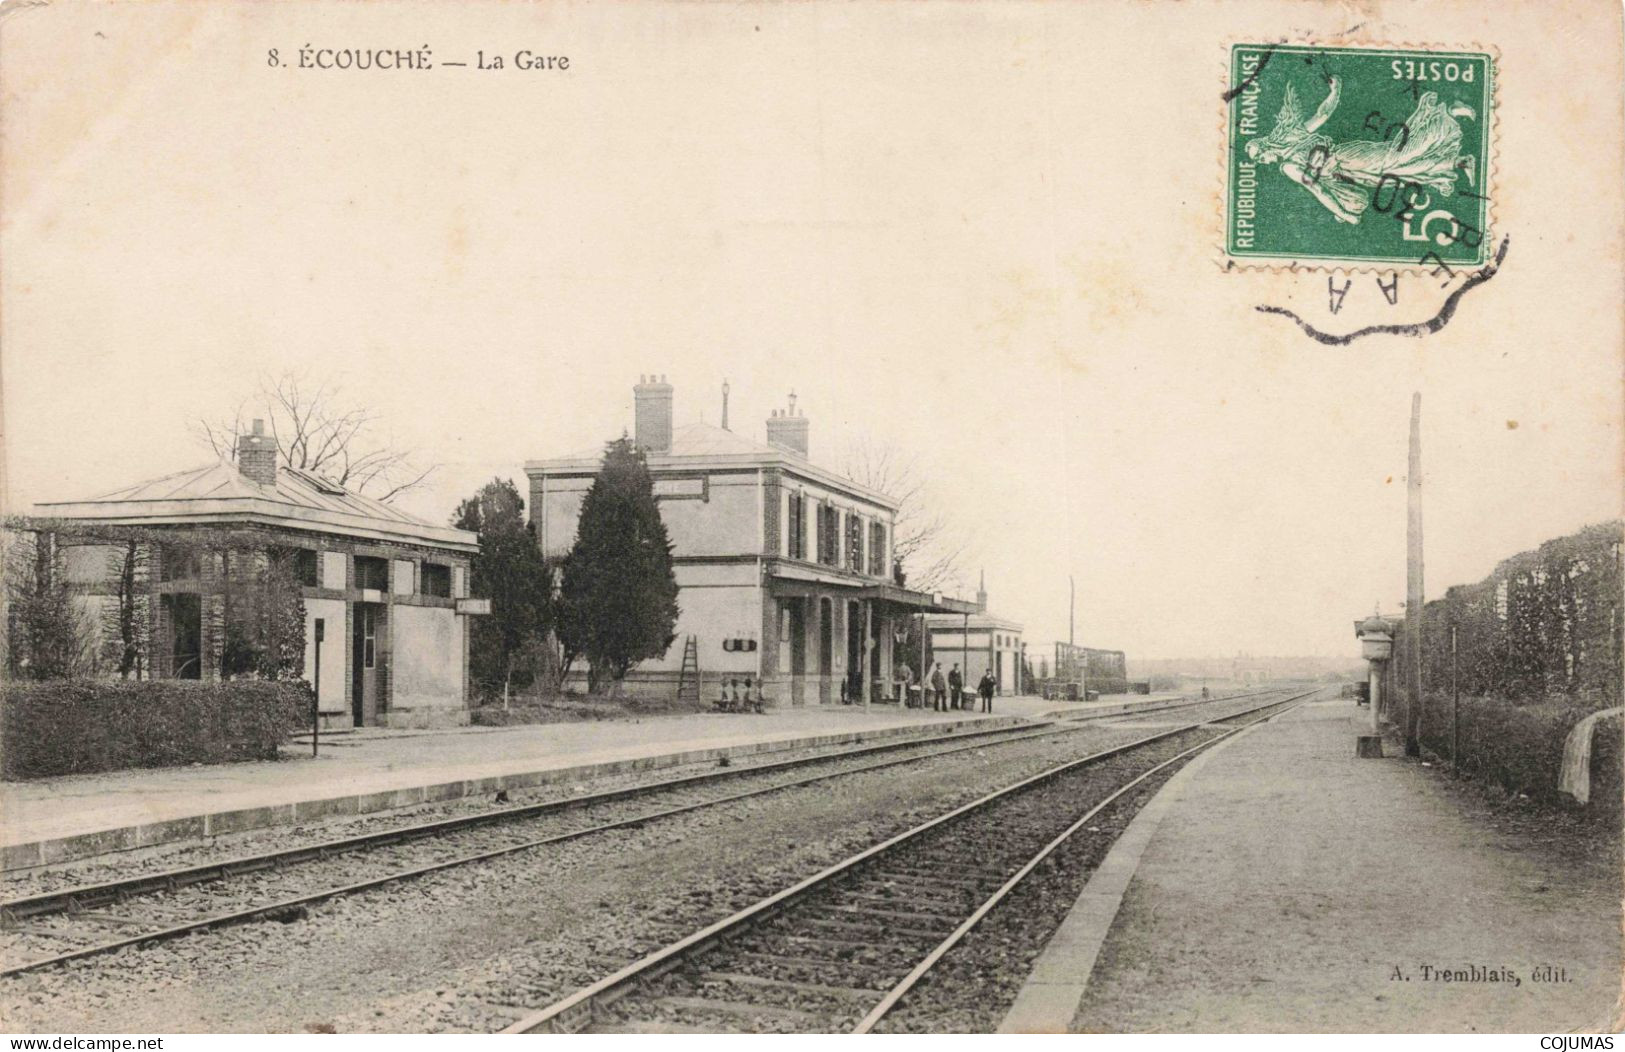 61 - ECOUCHE - S20141 - La Gare - Ecouche